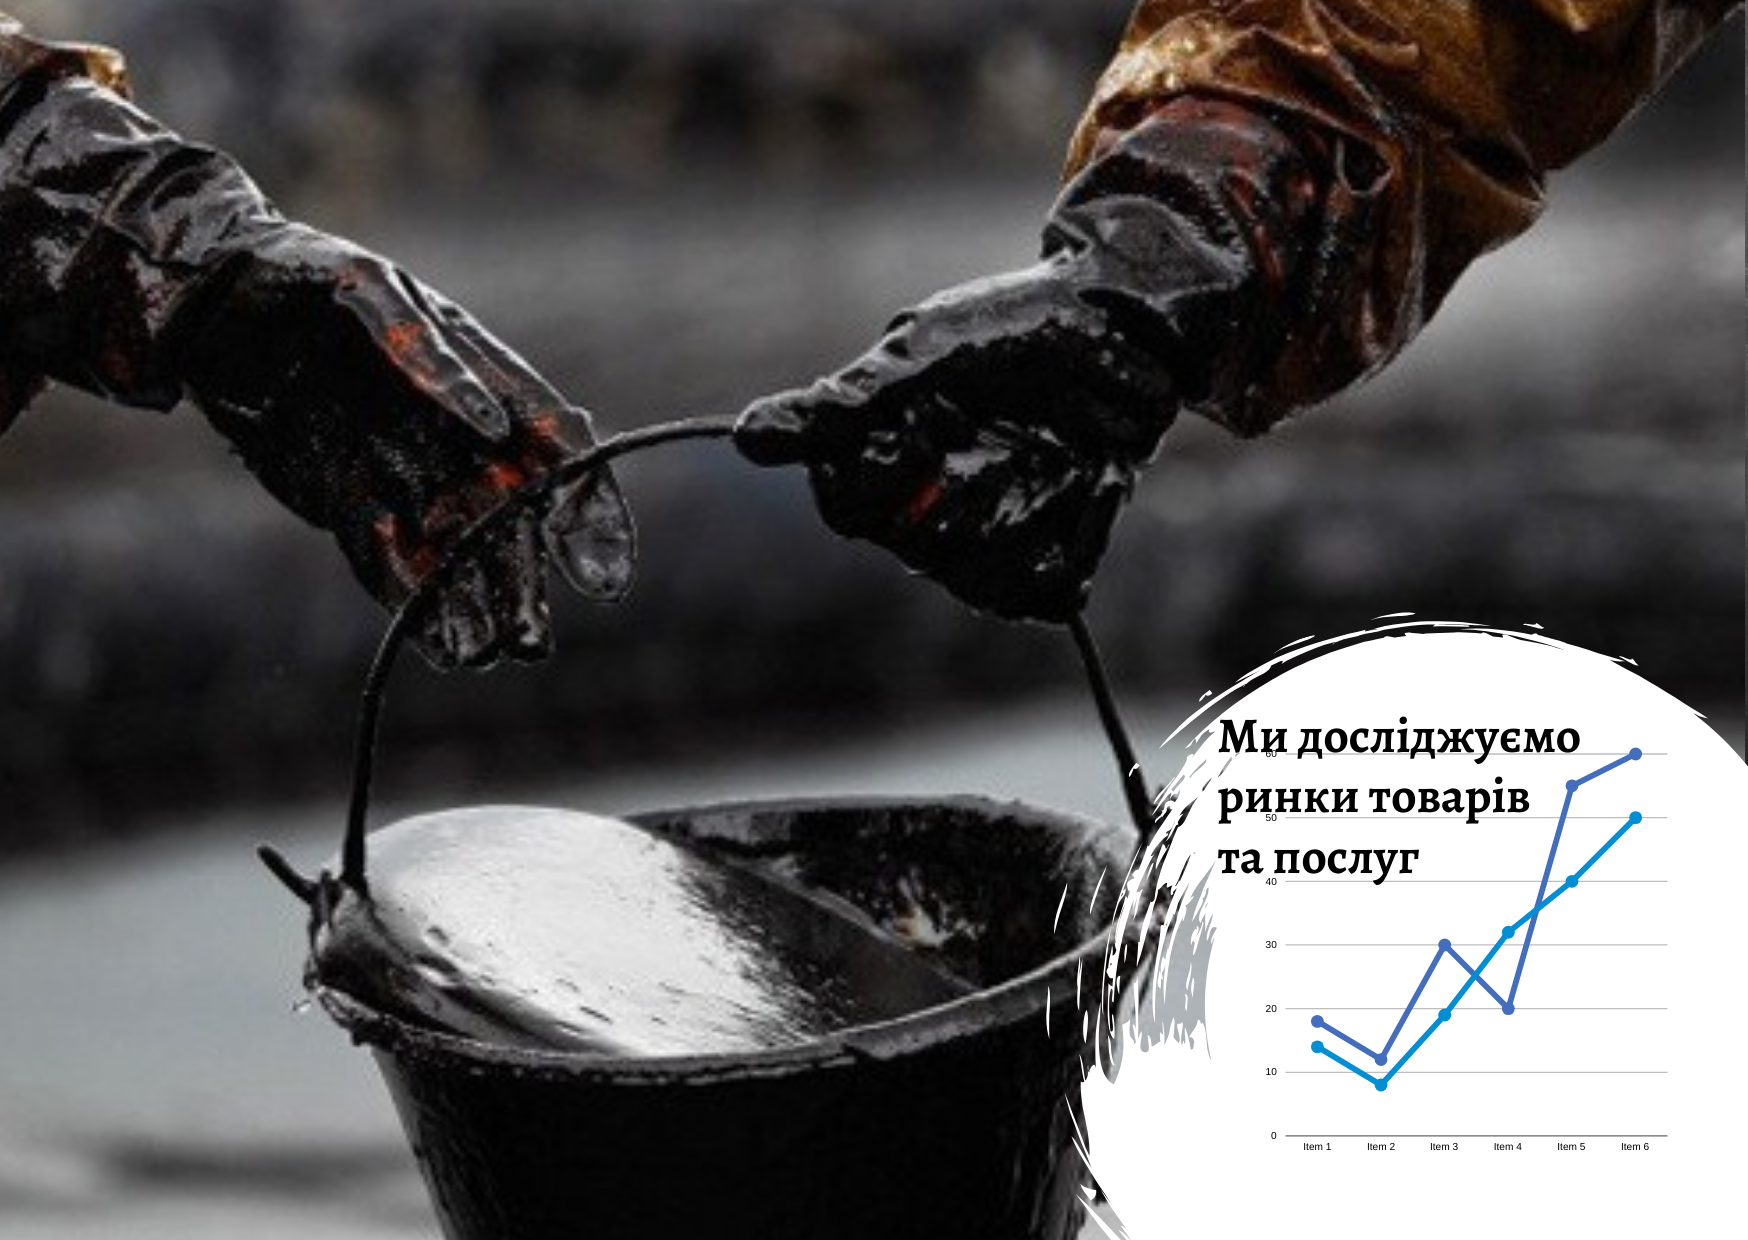 Ukrainian petroleum products market: wartime conditions